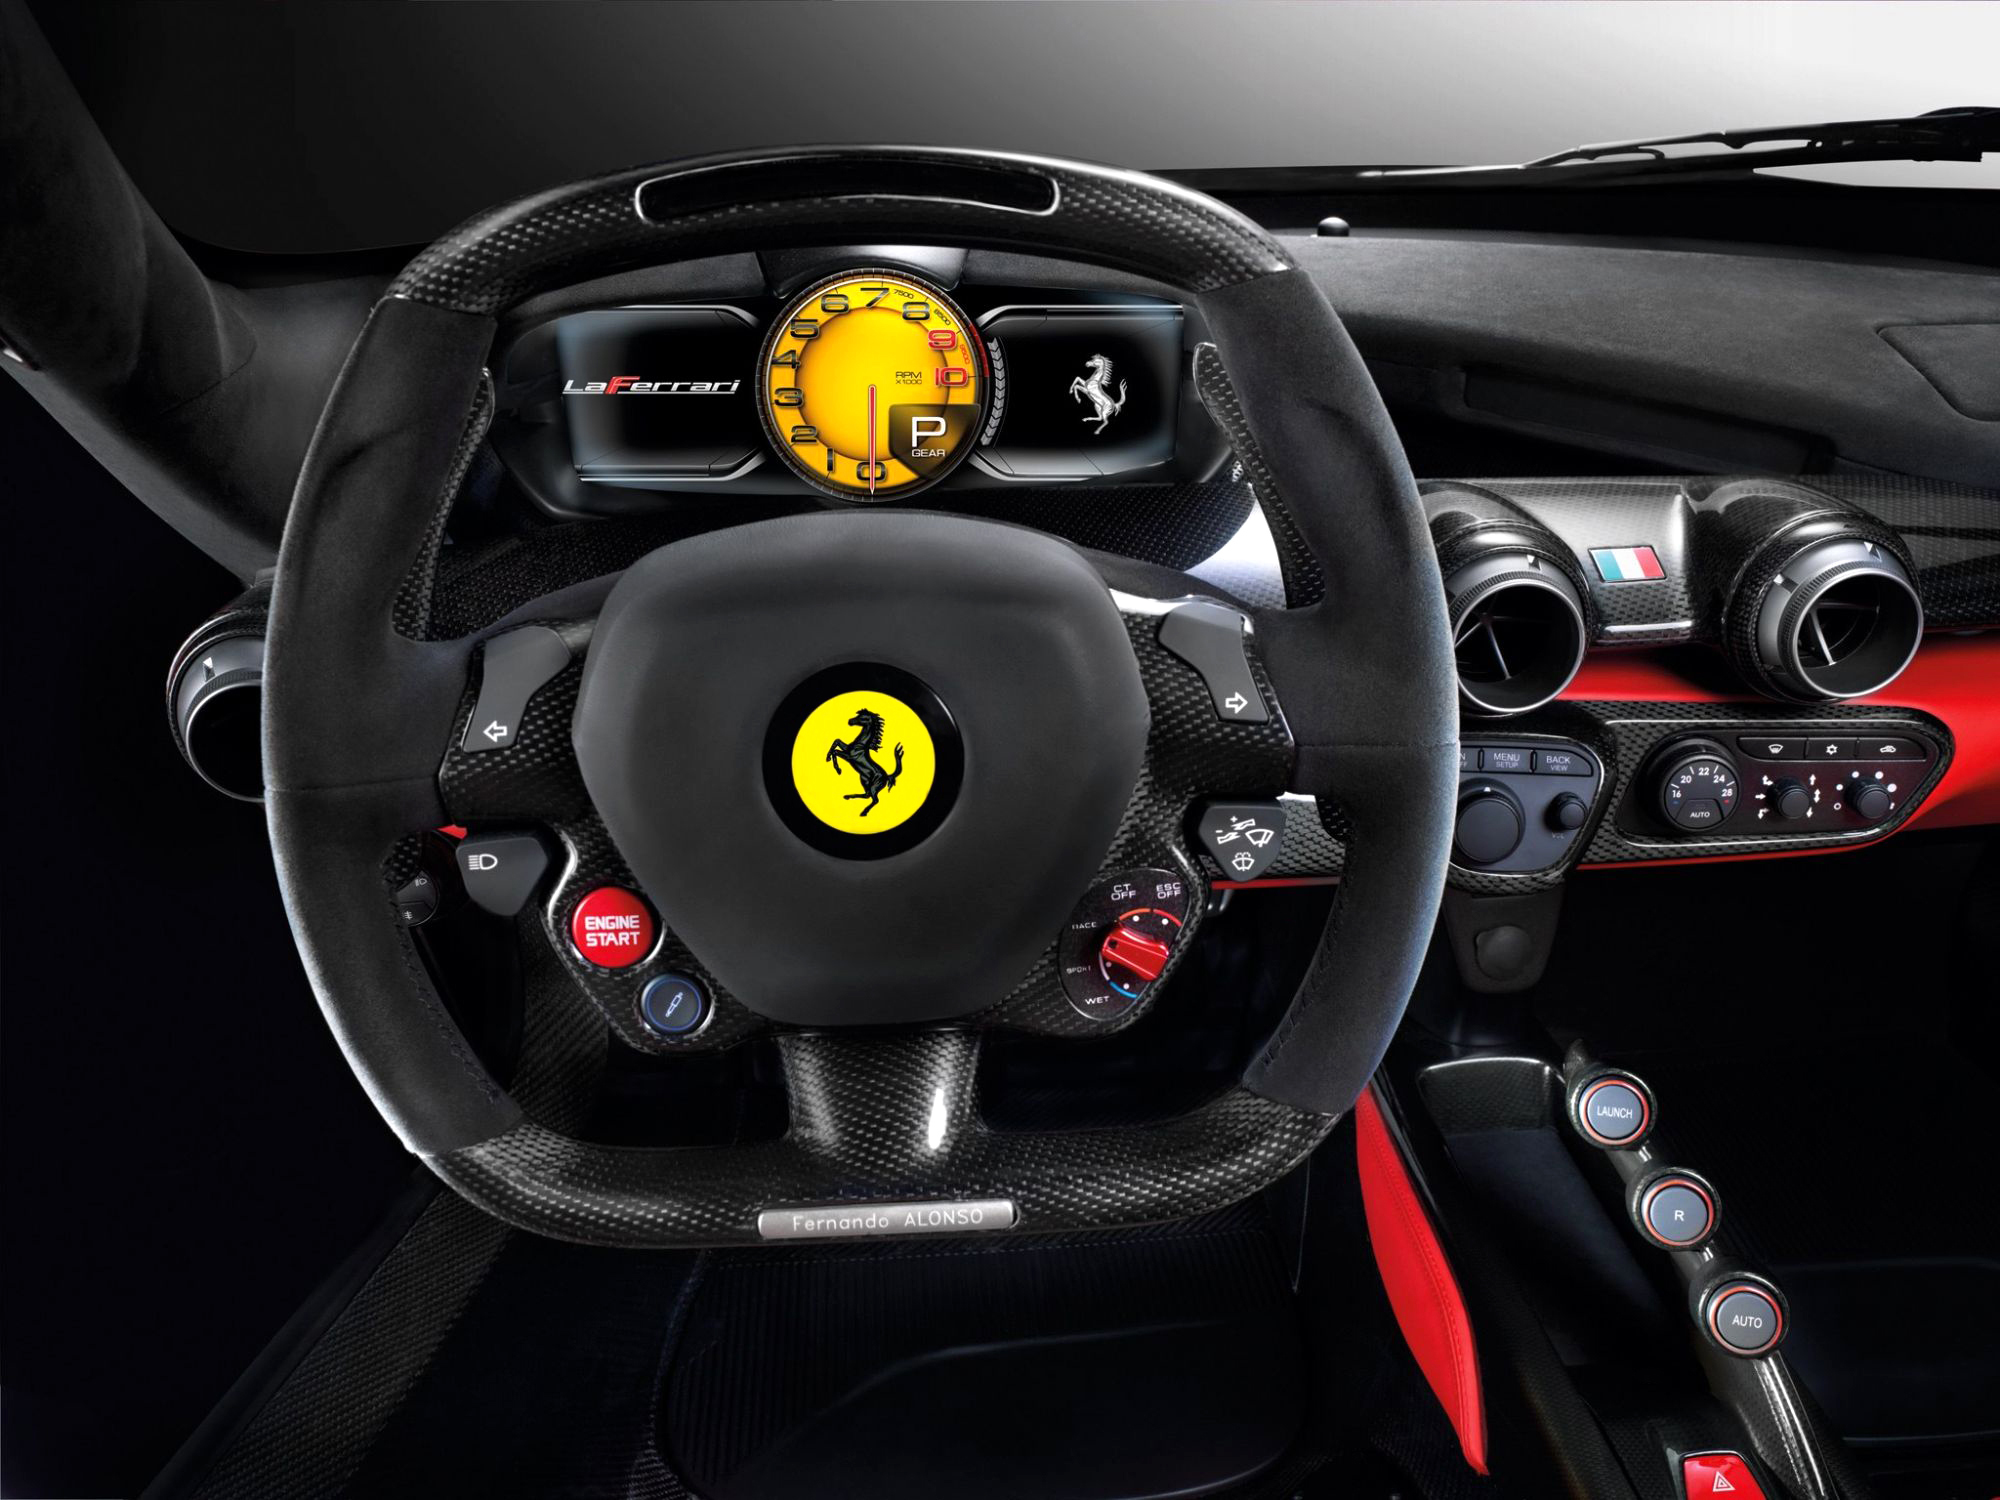 105357 Заставки и Обои Феррари (Ferrari) на телефон. Скачать машины, салон, руль, тачки (cars) картинки бесплатно